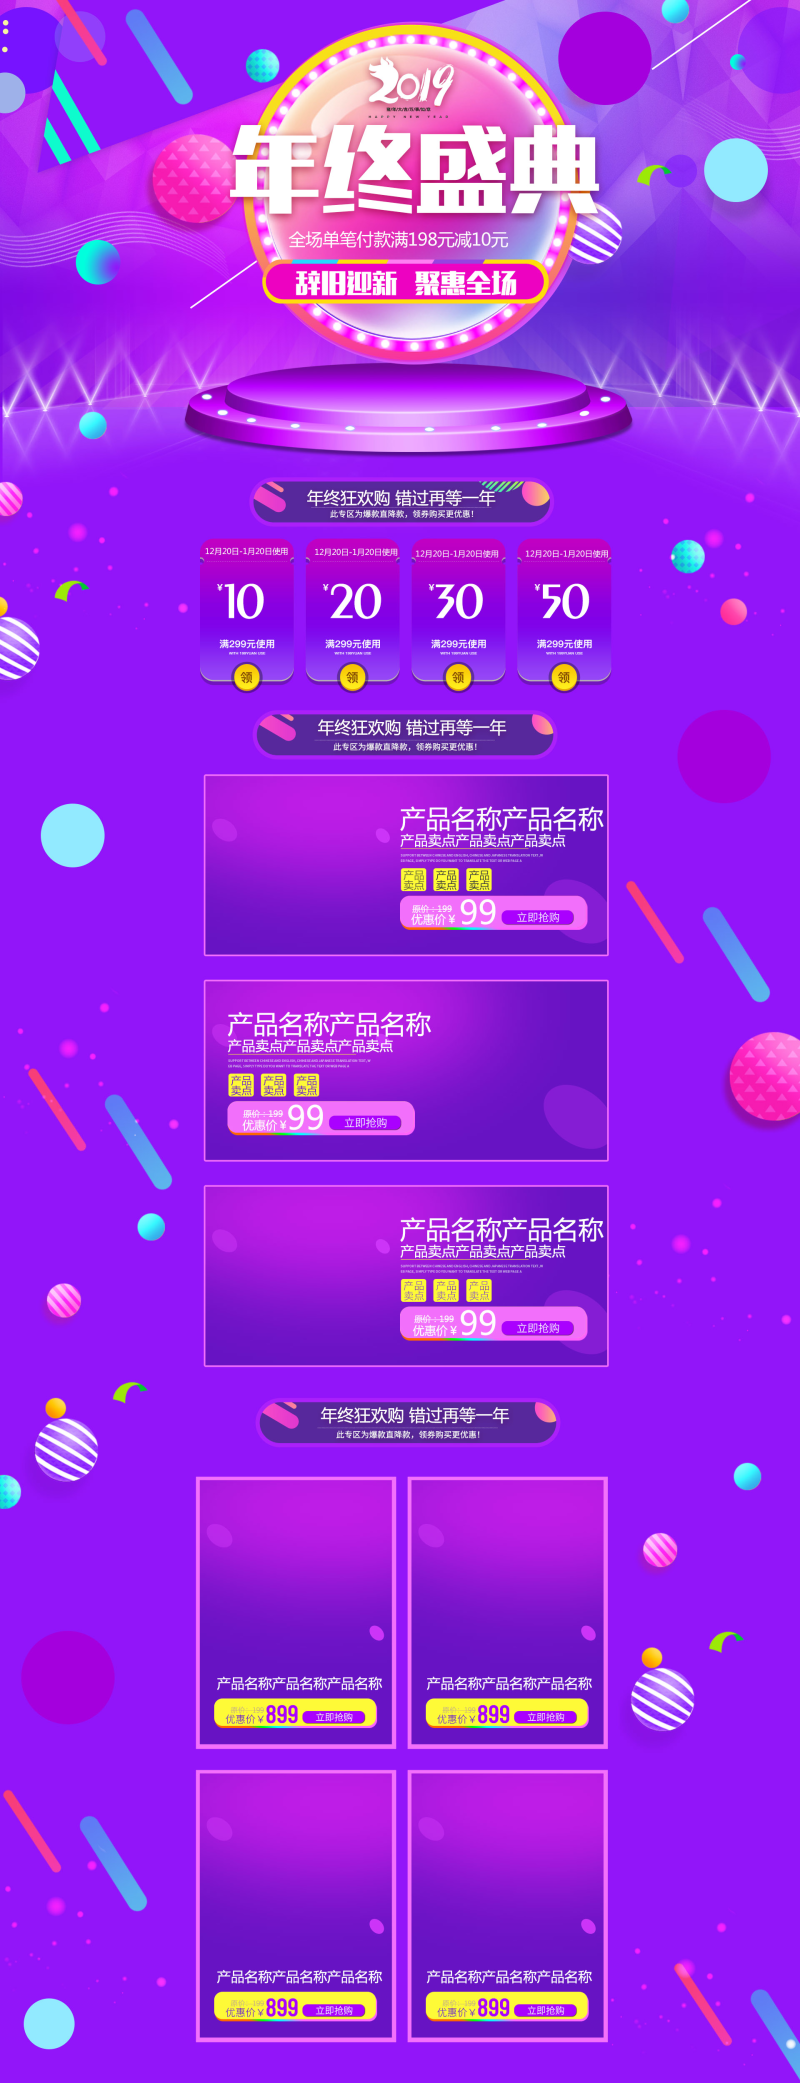 紫色系年终盛典网店首页装修模板PSD源文件